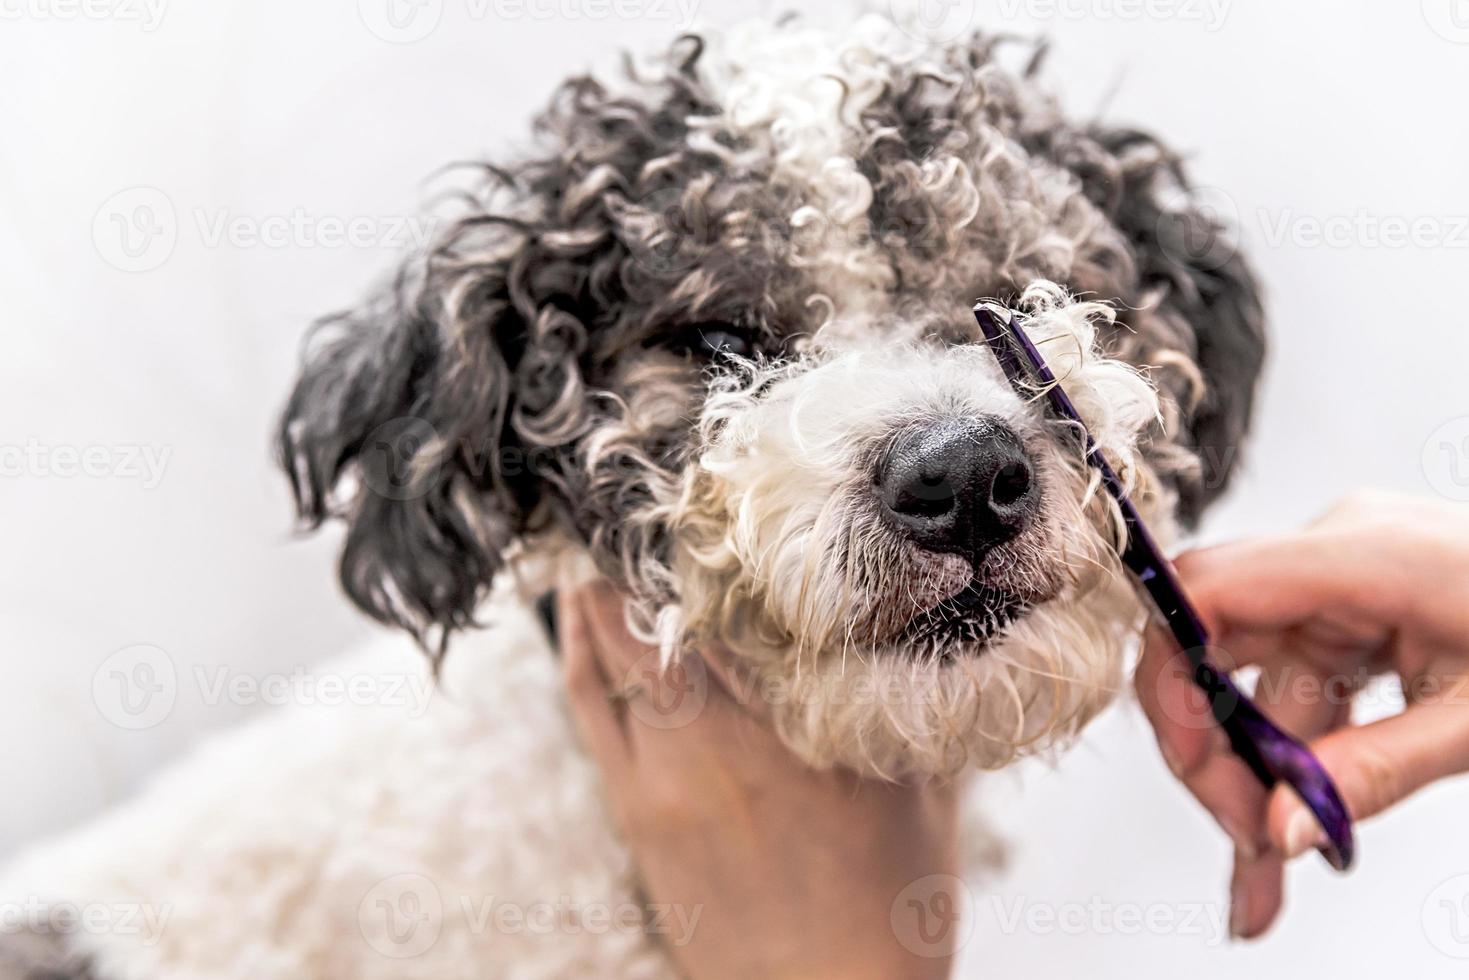 süßer weißer und schwarzer Bichon Frise Hund, der von einem professionellen Groomer gepflegt wird foto